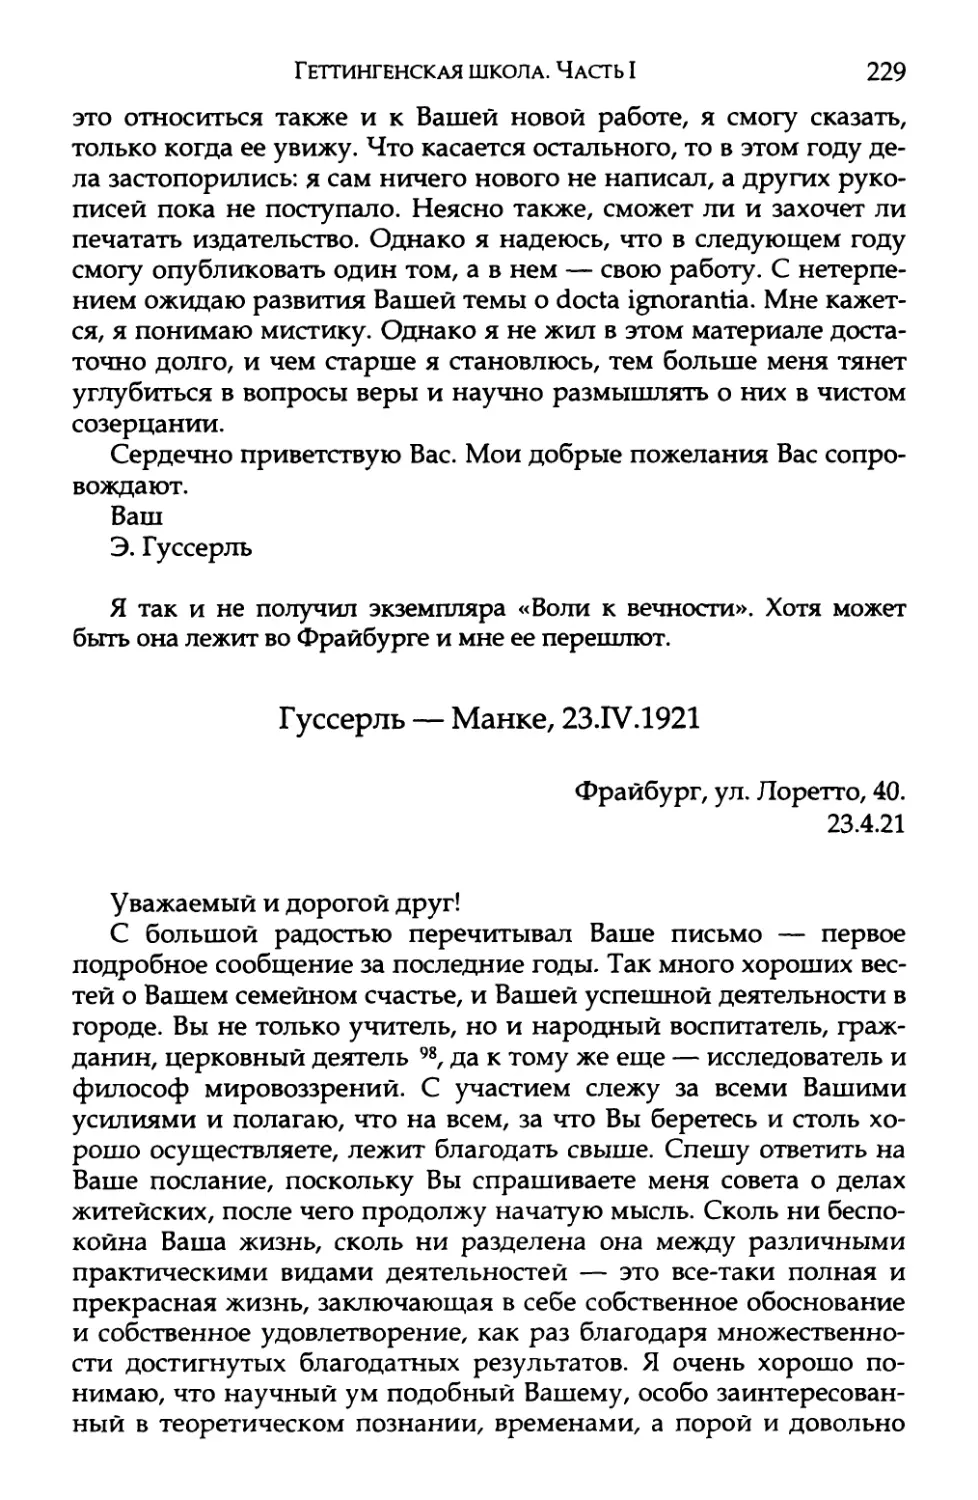 Гуссерль — Манке, 23.IV.1921. Перевод И. А. Михайлова